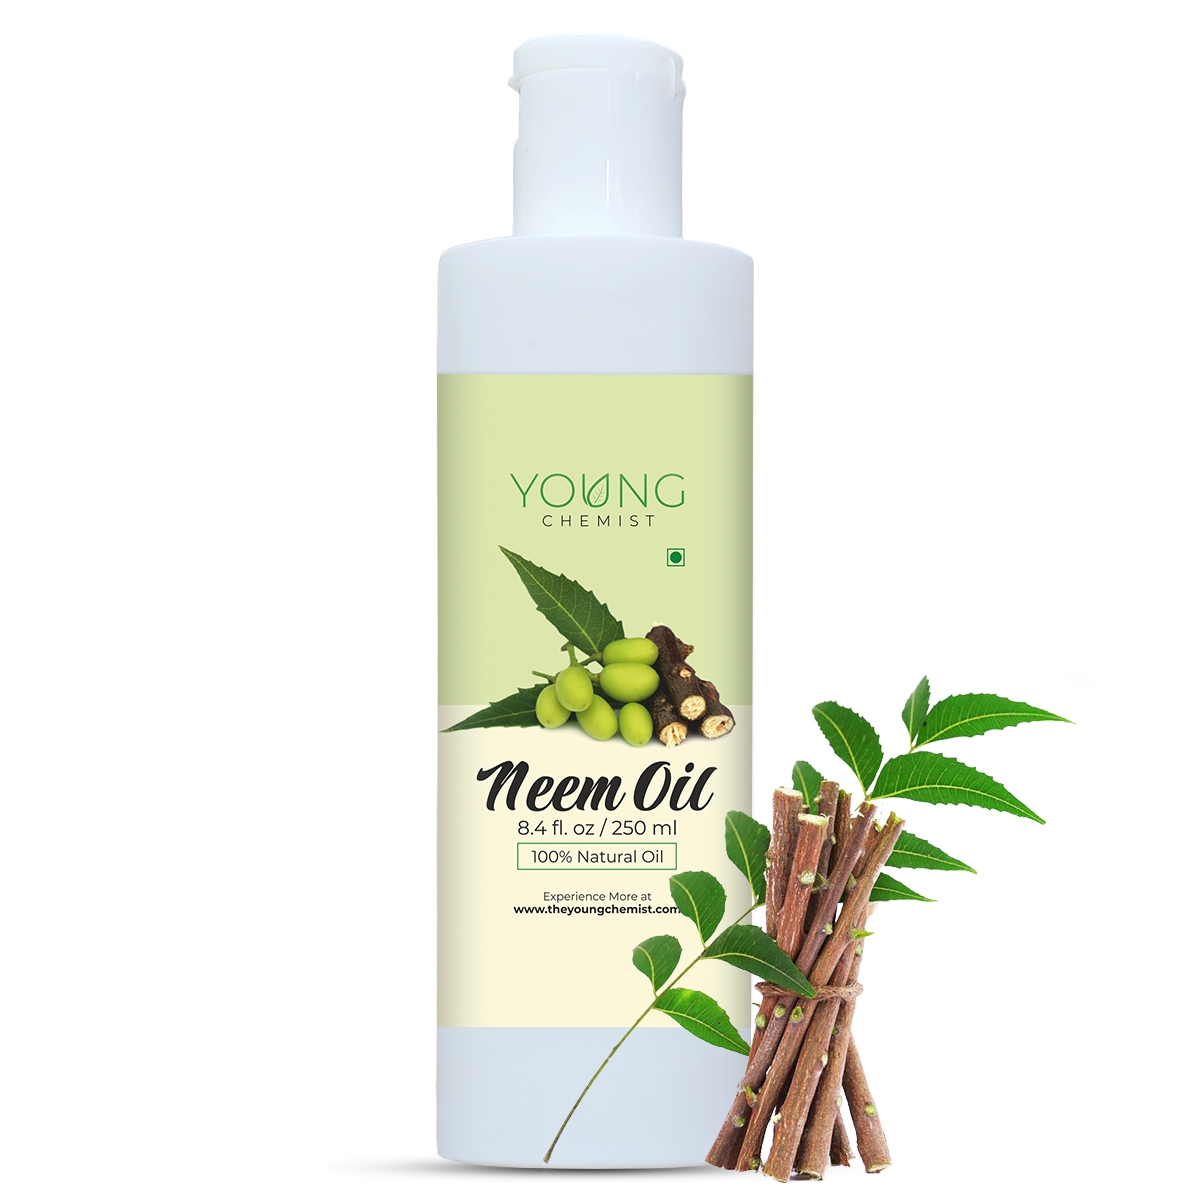 neem oil-neem oil for plants-neem oil price-neem oil for hair